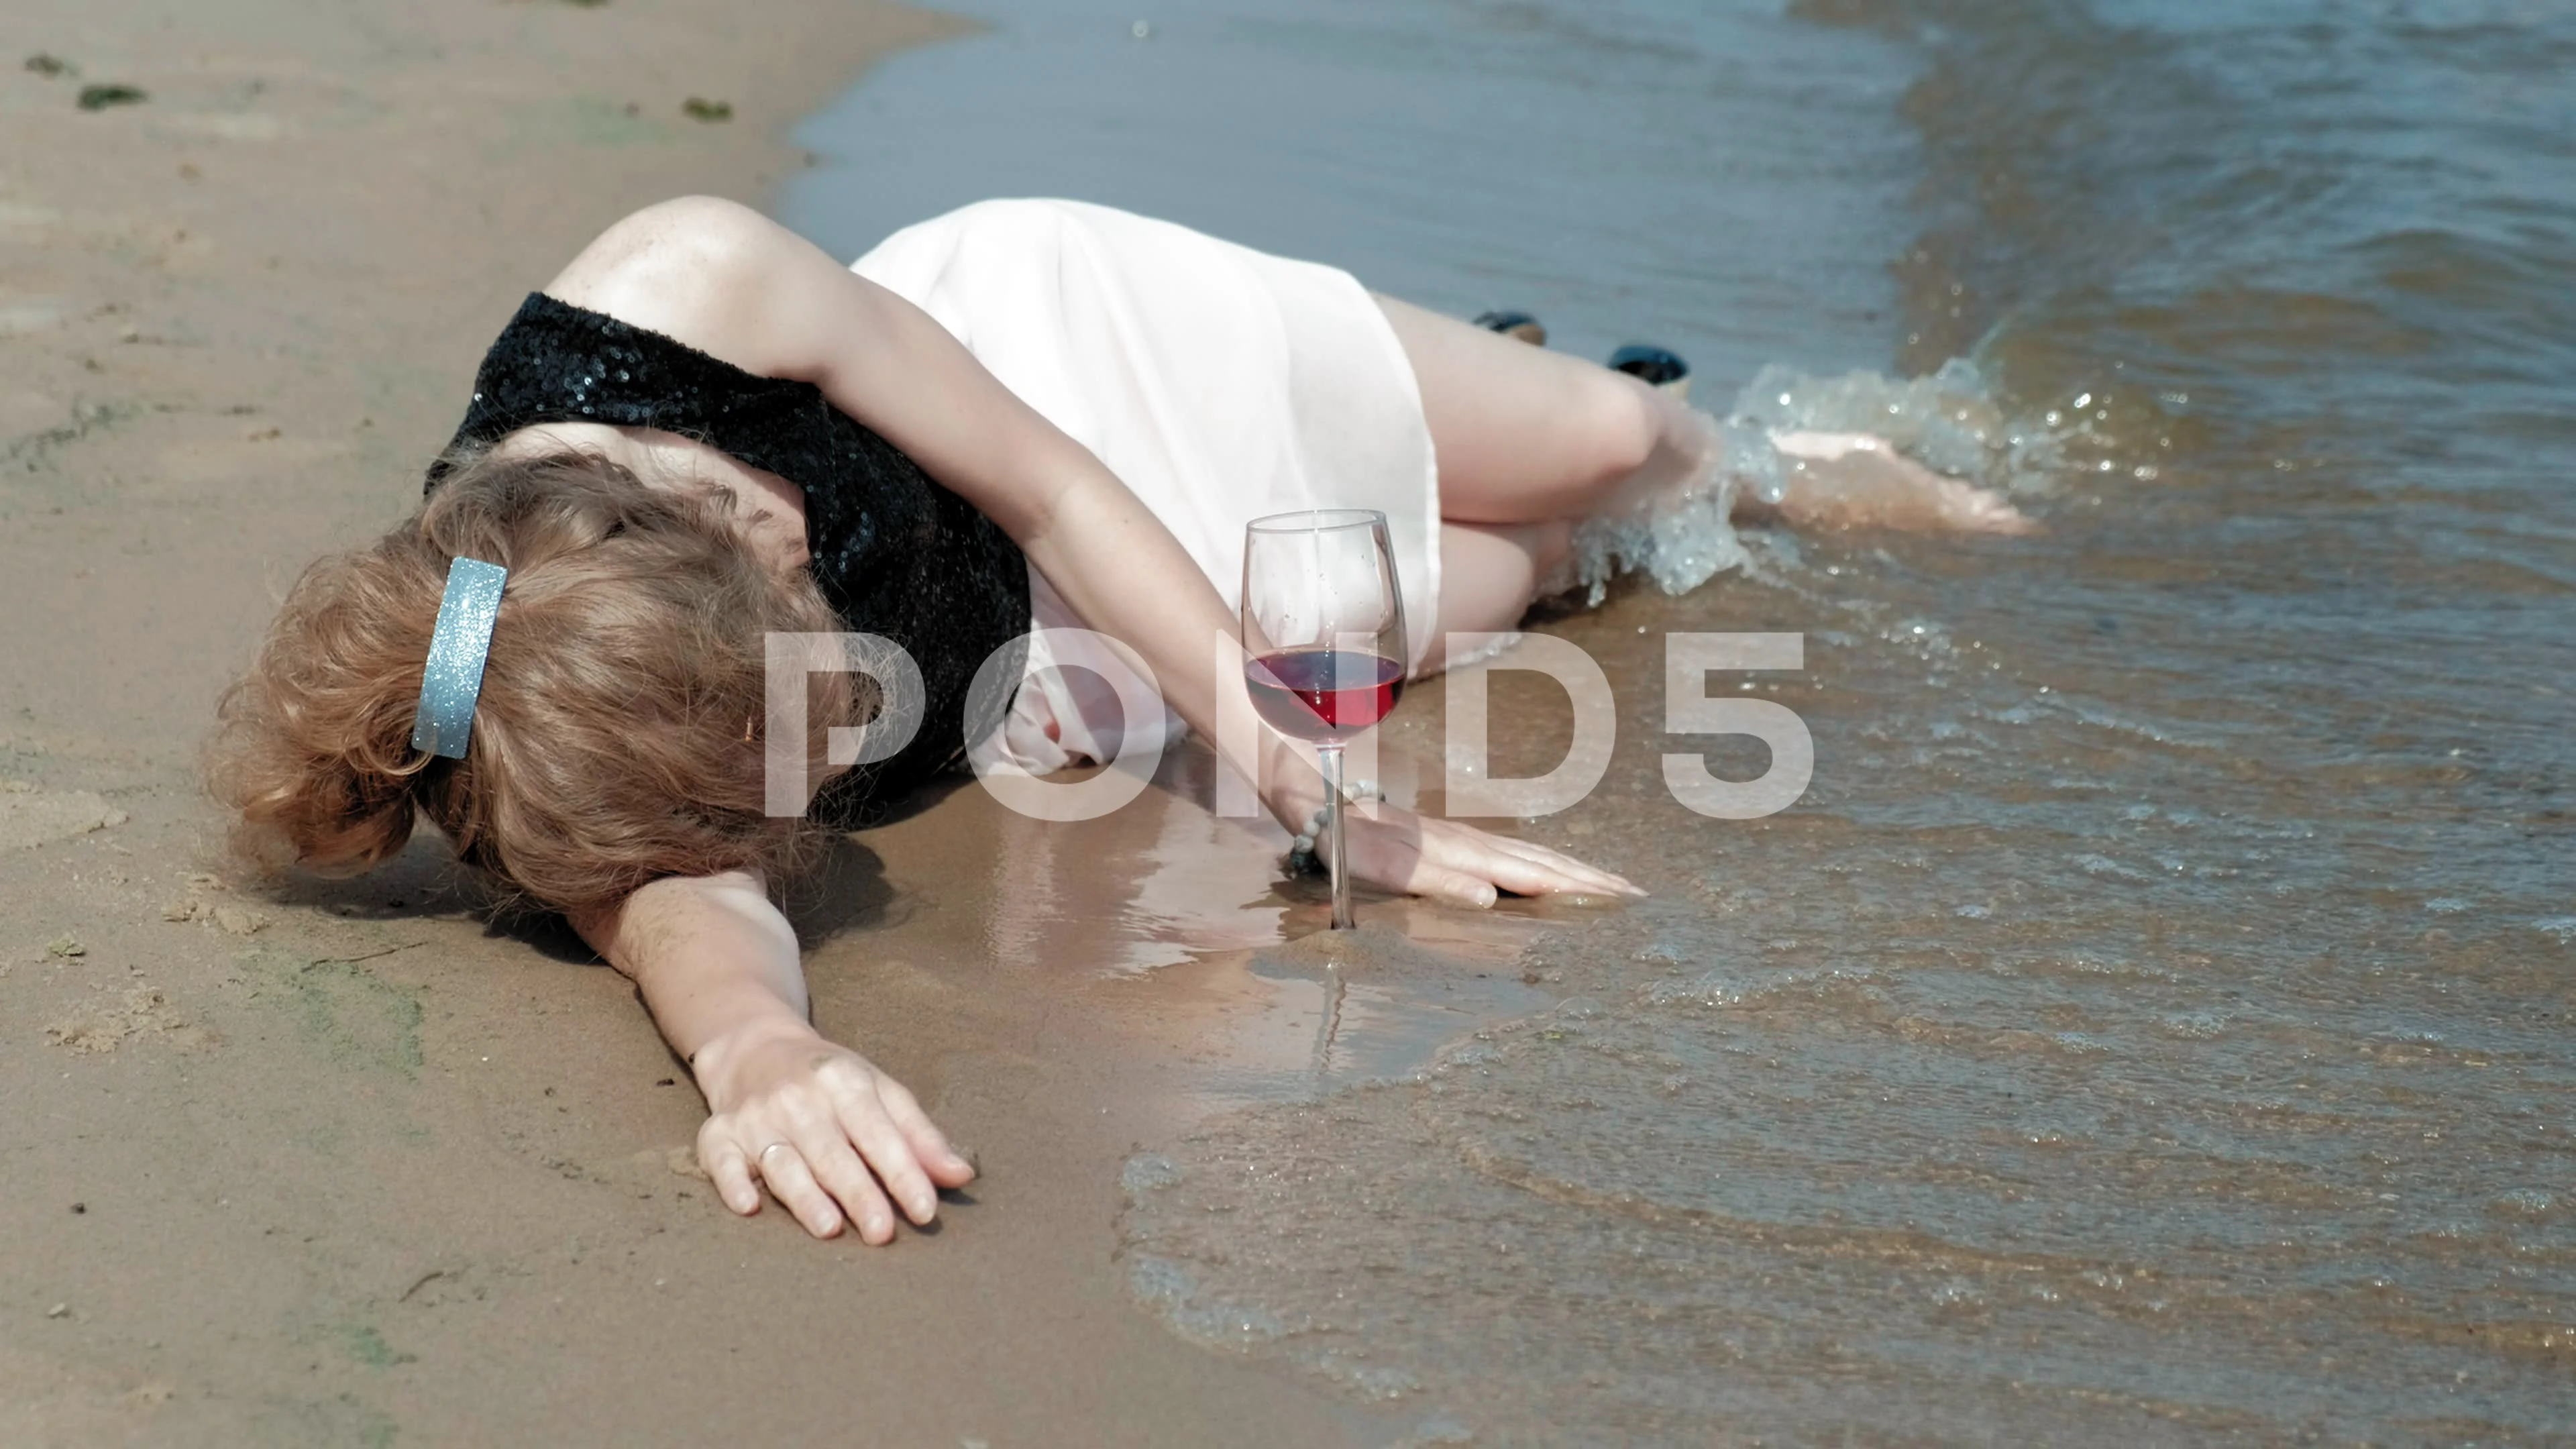 Girls Drunk On Beach